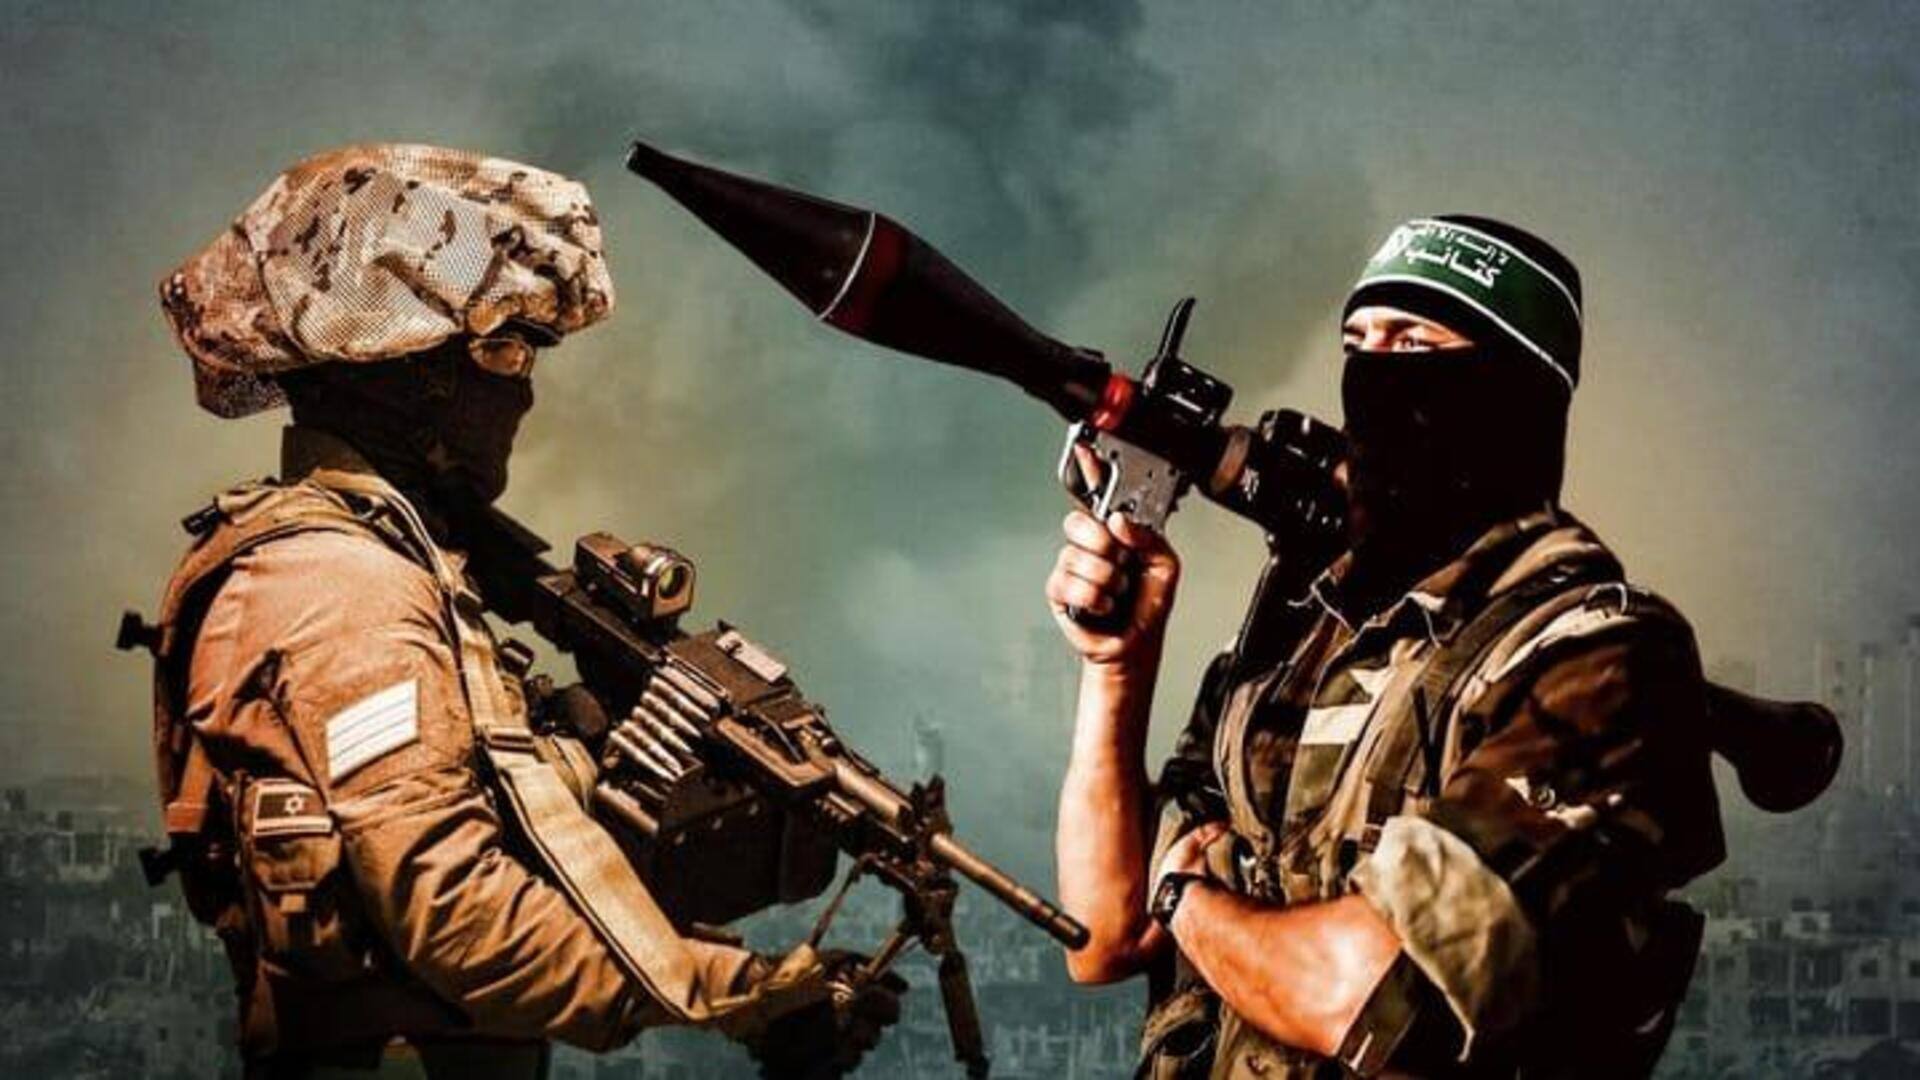 Israel Hamas war: బంధీల విడుదల కోసం 5రోజుల పాటు కాల్పుల విరమణ 